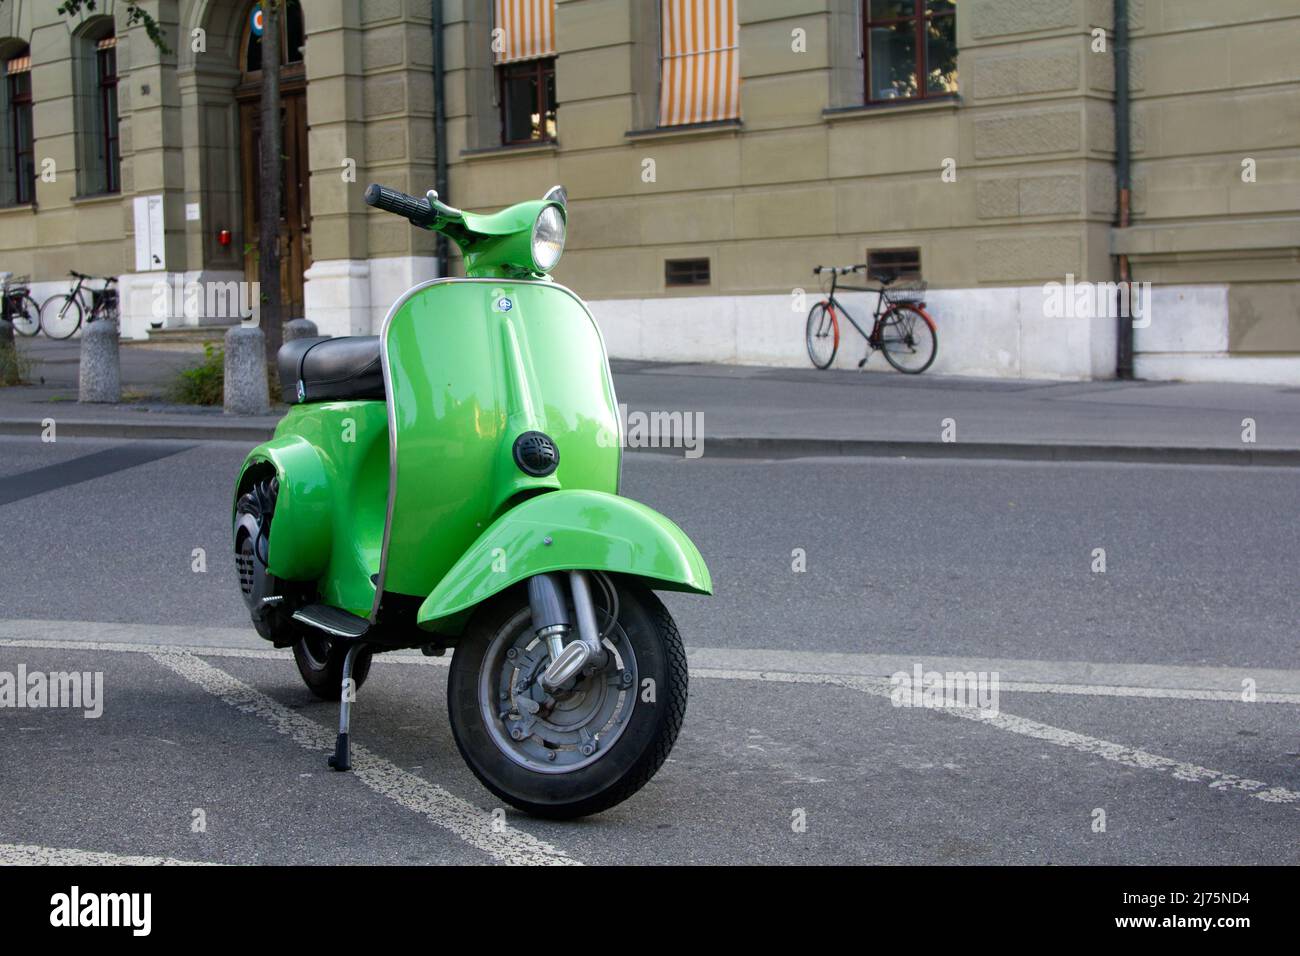 Piaggio Vespa italian scooter Stock Photo